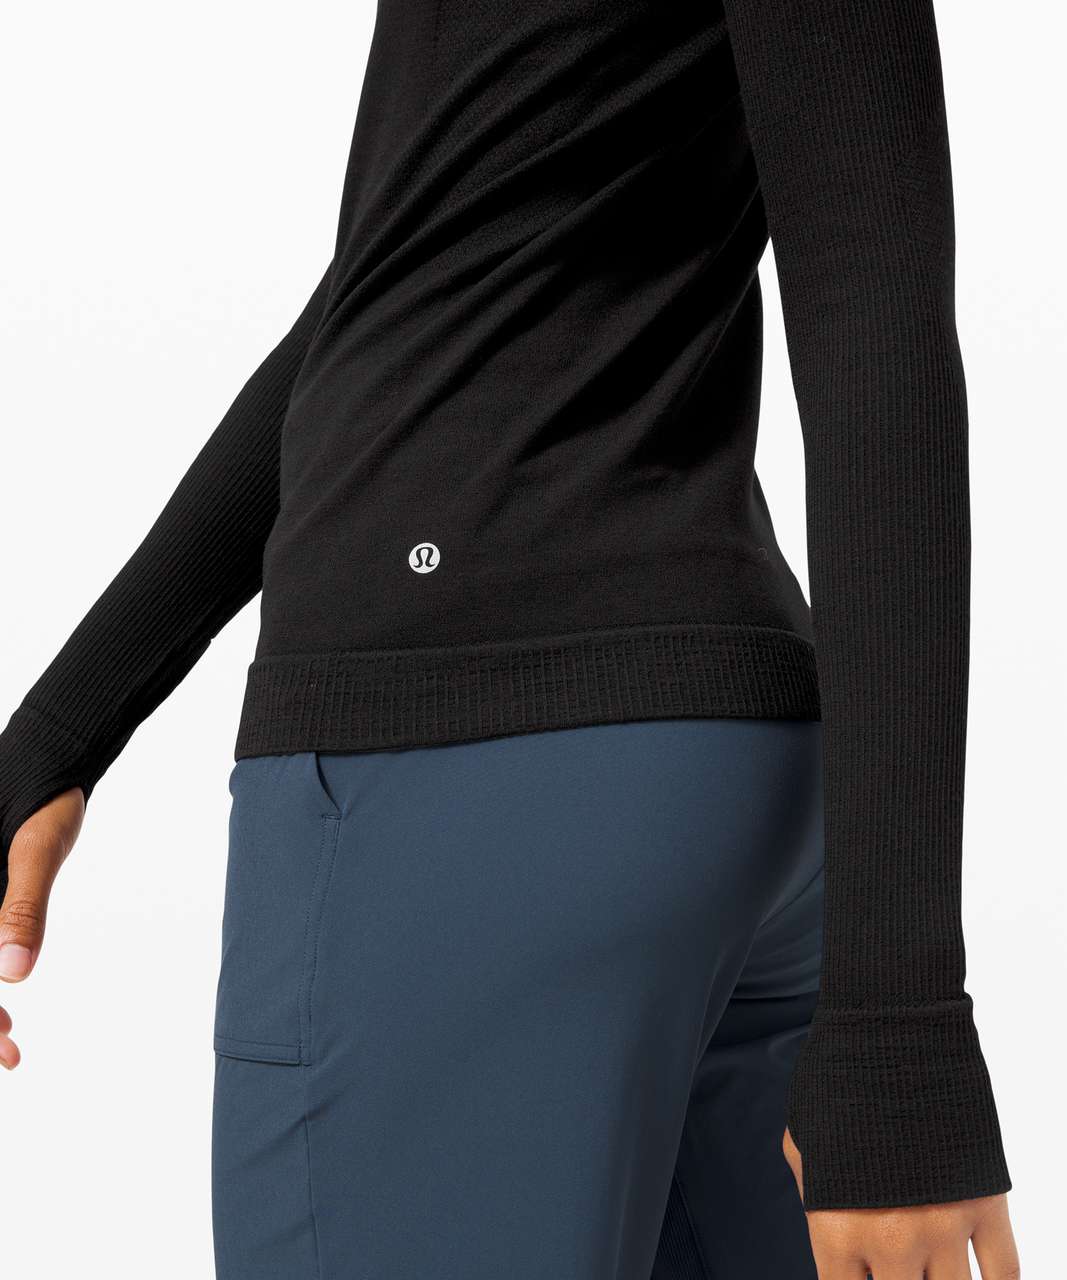 lululemon Women's Keep the Heat Thermal Long Sleeve Shirt, Golf Equipment:  Clubs, Balls, Bags